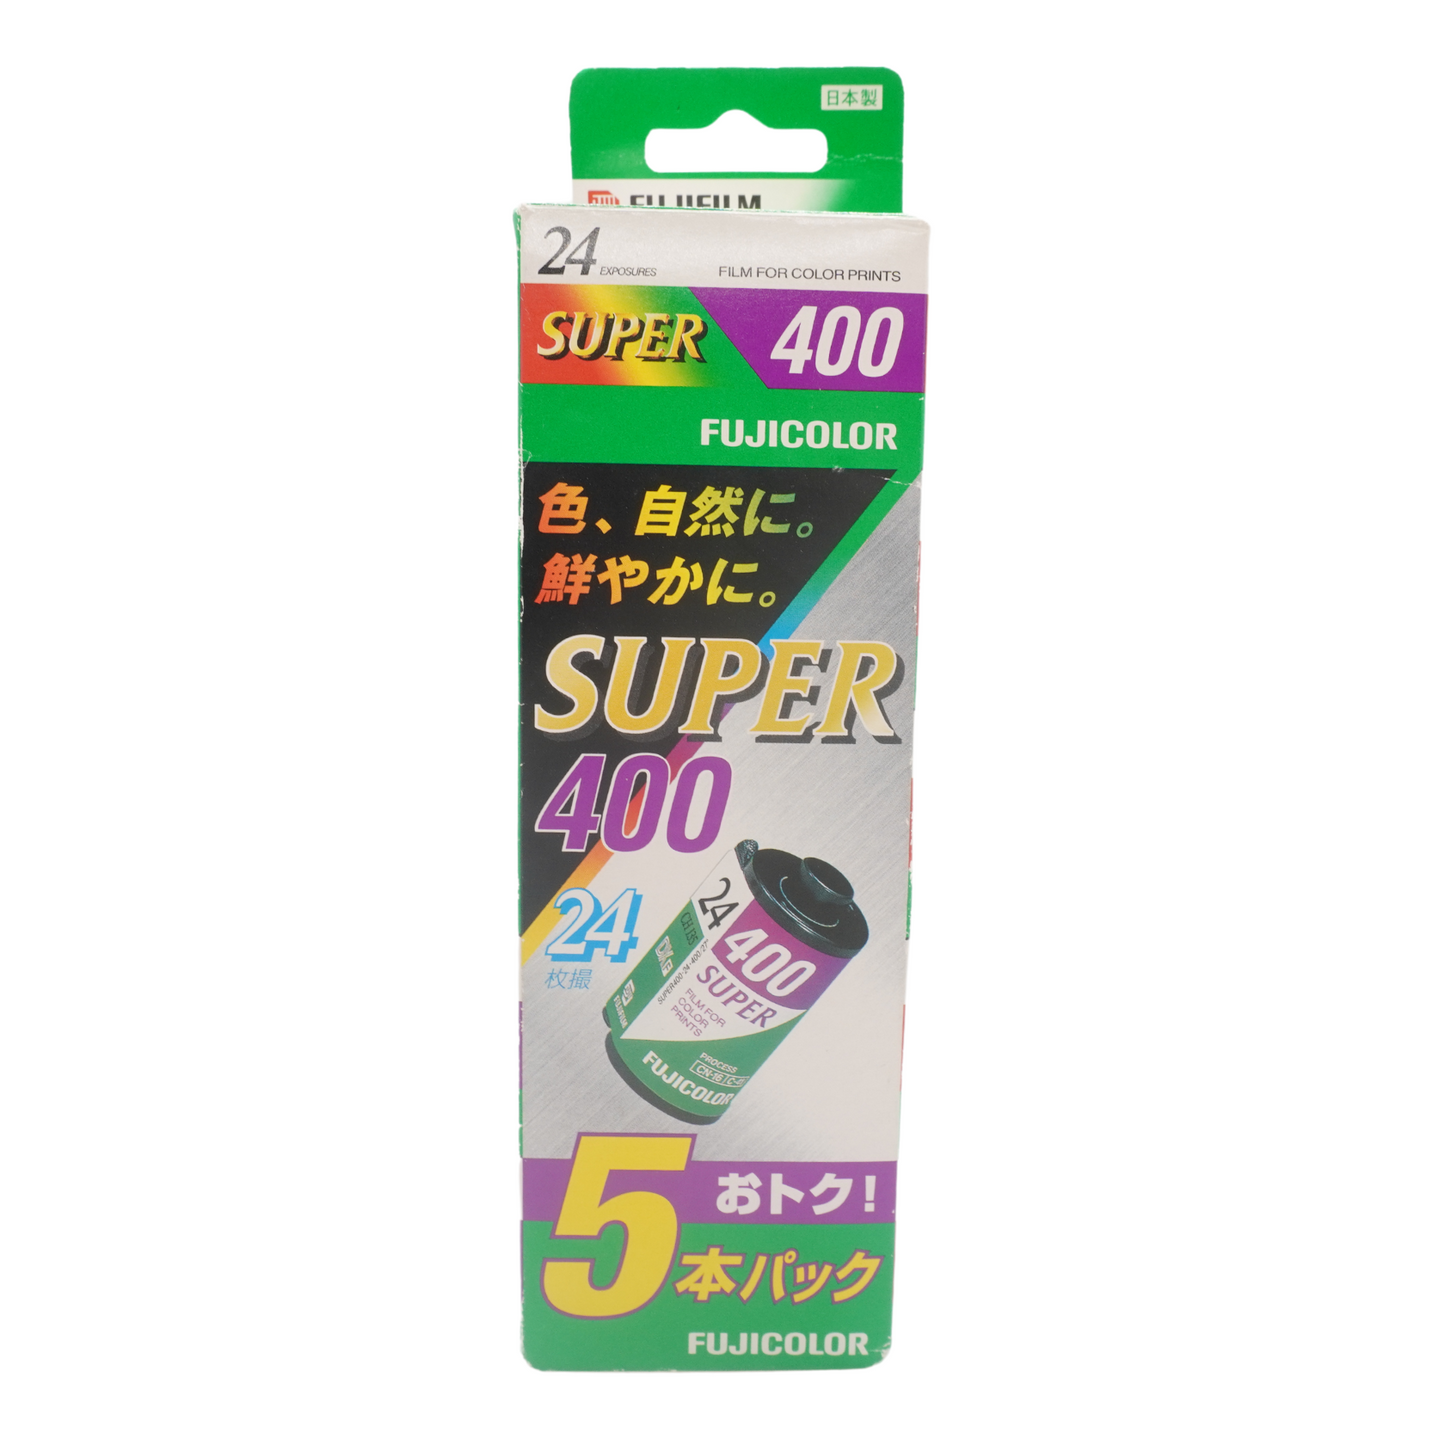 Fujifilm Super 400 24exp Expired Film (2004/06)